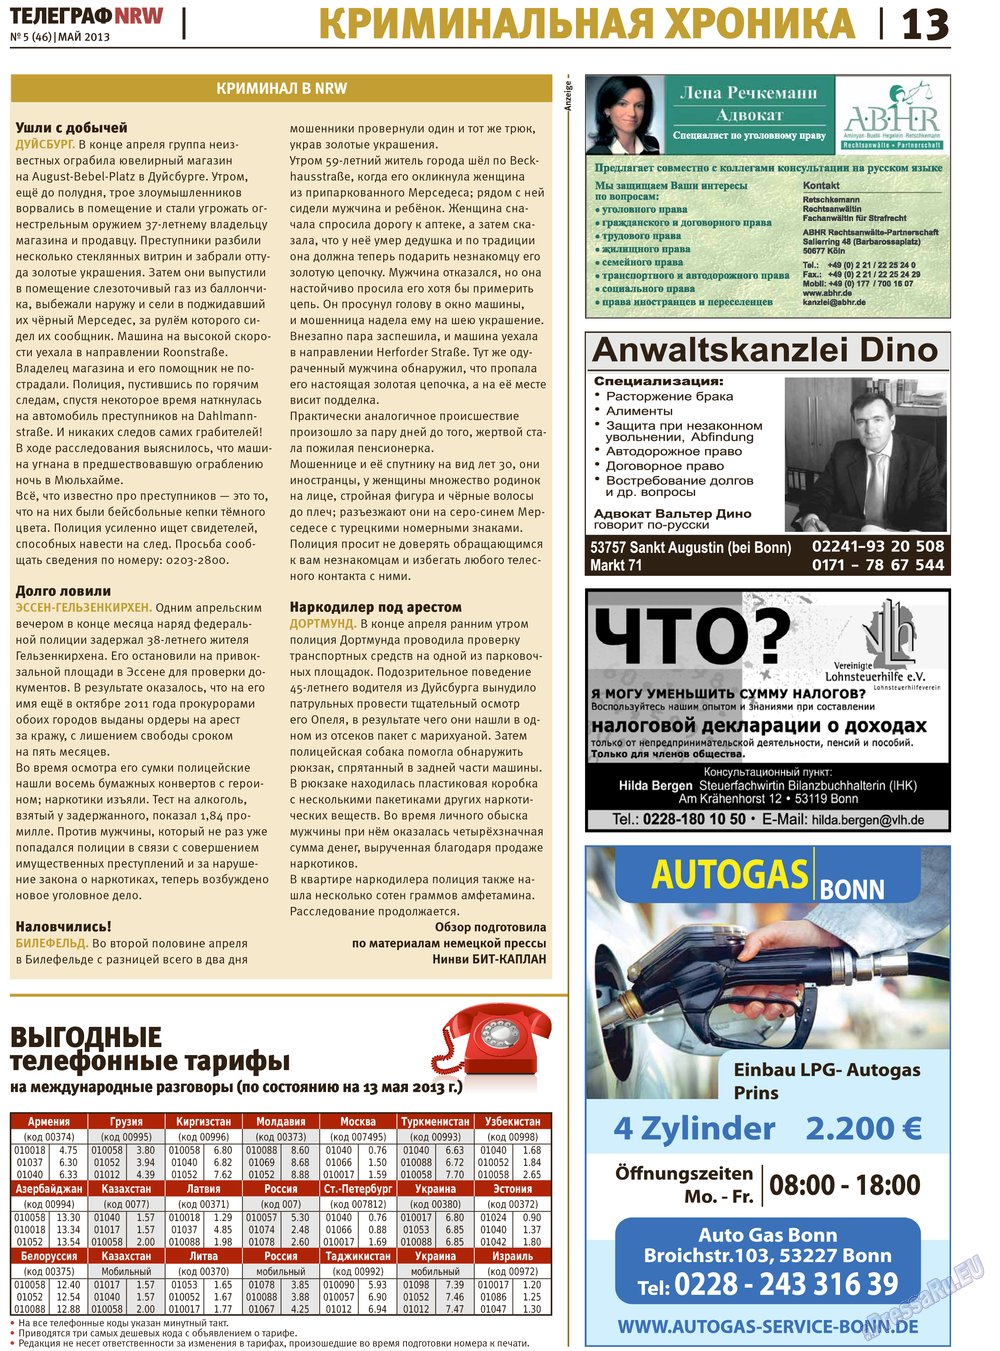 Телеграф NRW (газета). 2013 год, номер 5, стр. 13